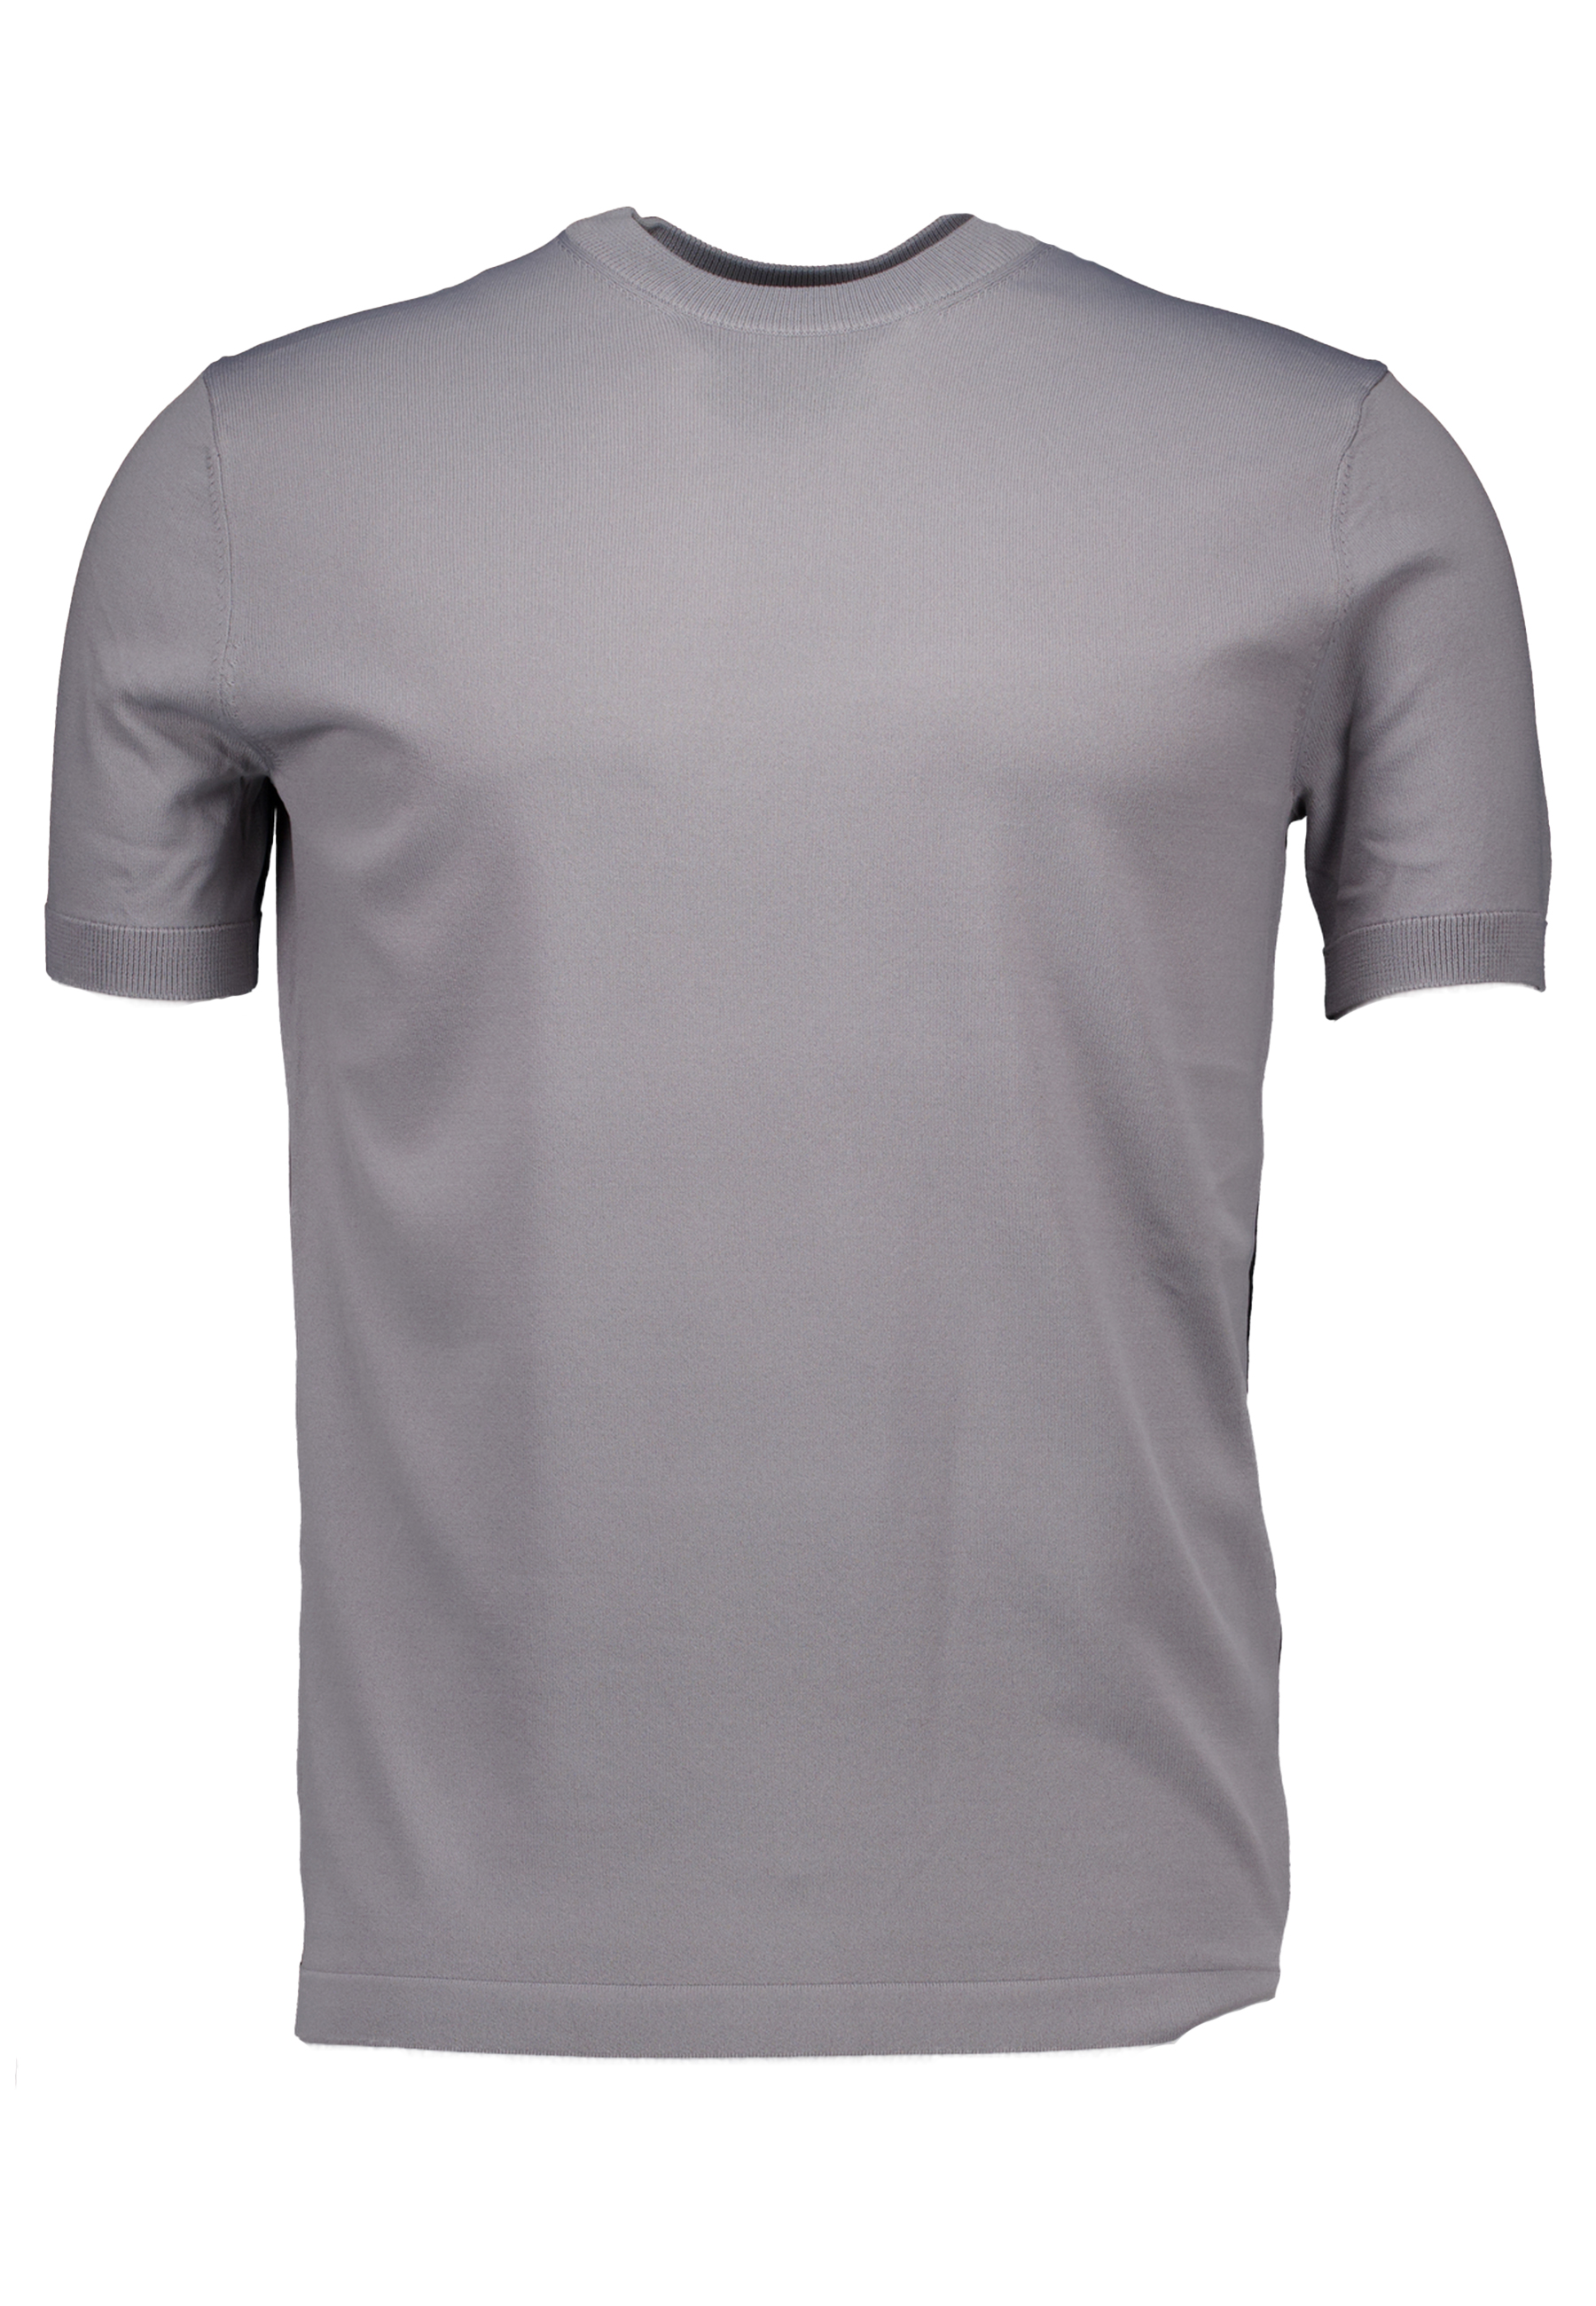 Shirt Grijs Round ss t-shirts grijs